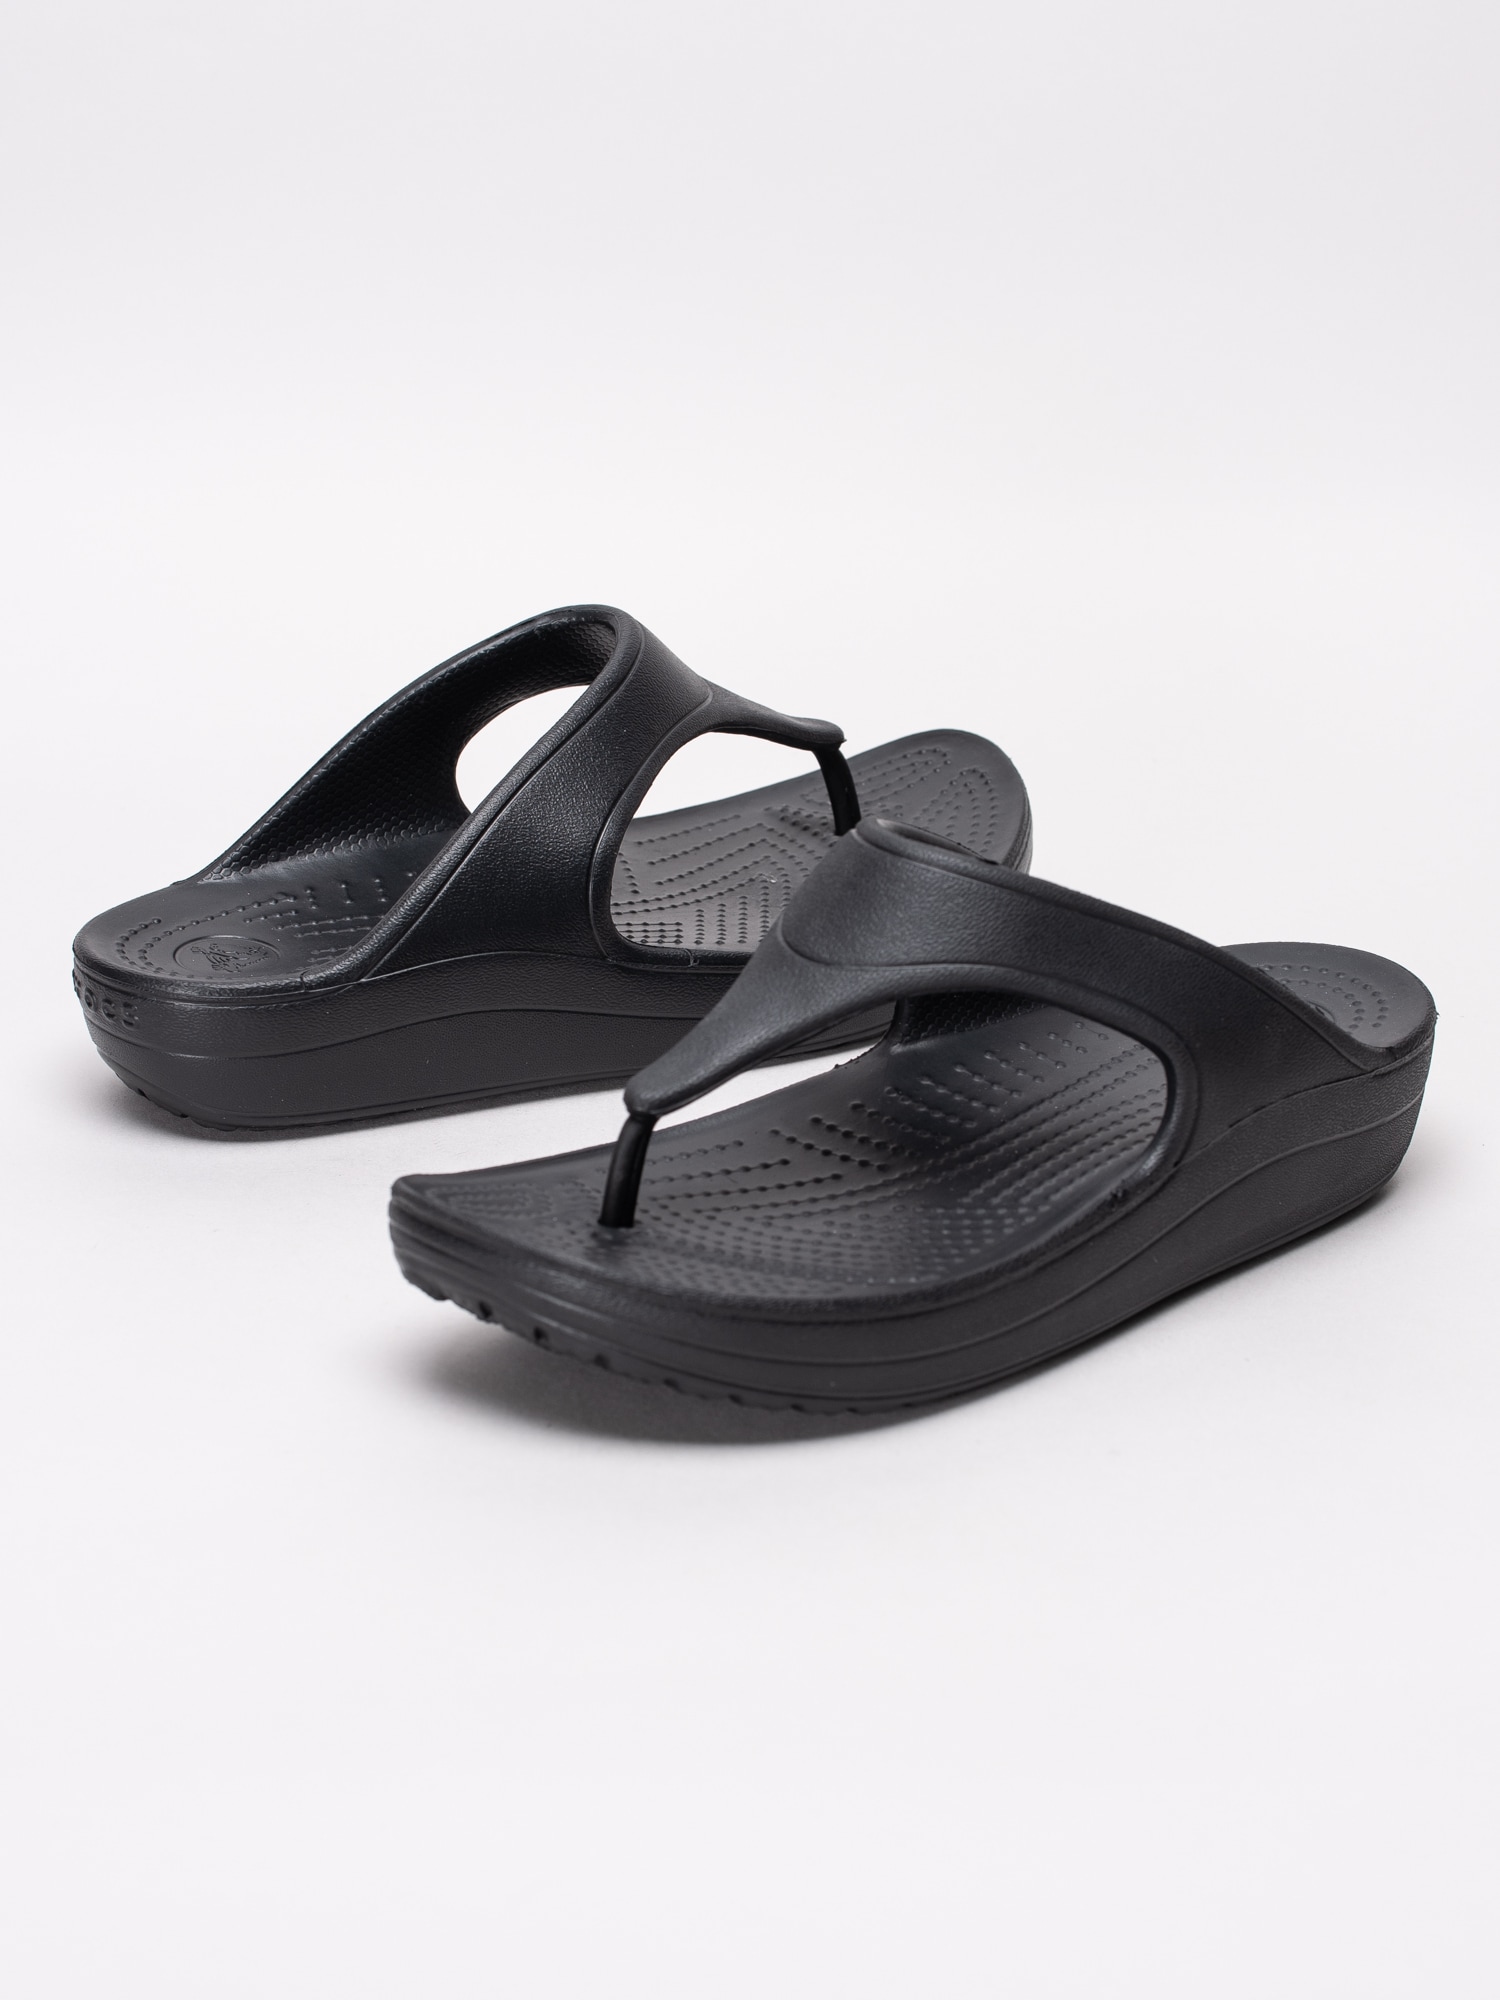 65191019 Crocs Sloane Platform Flip W 200486-001 svarta flipflops sandaler med kilklack-6